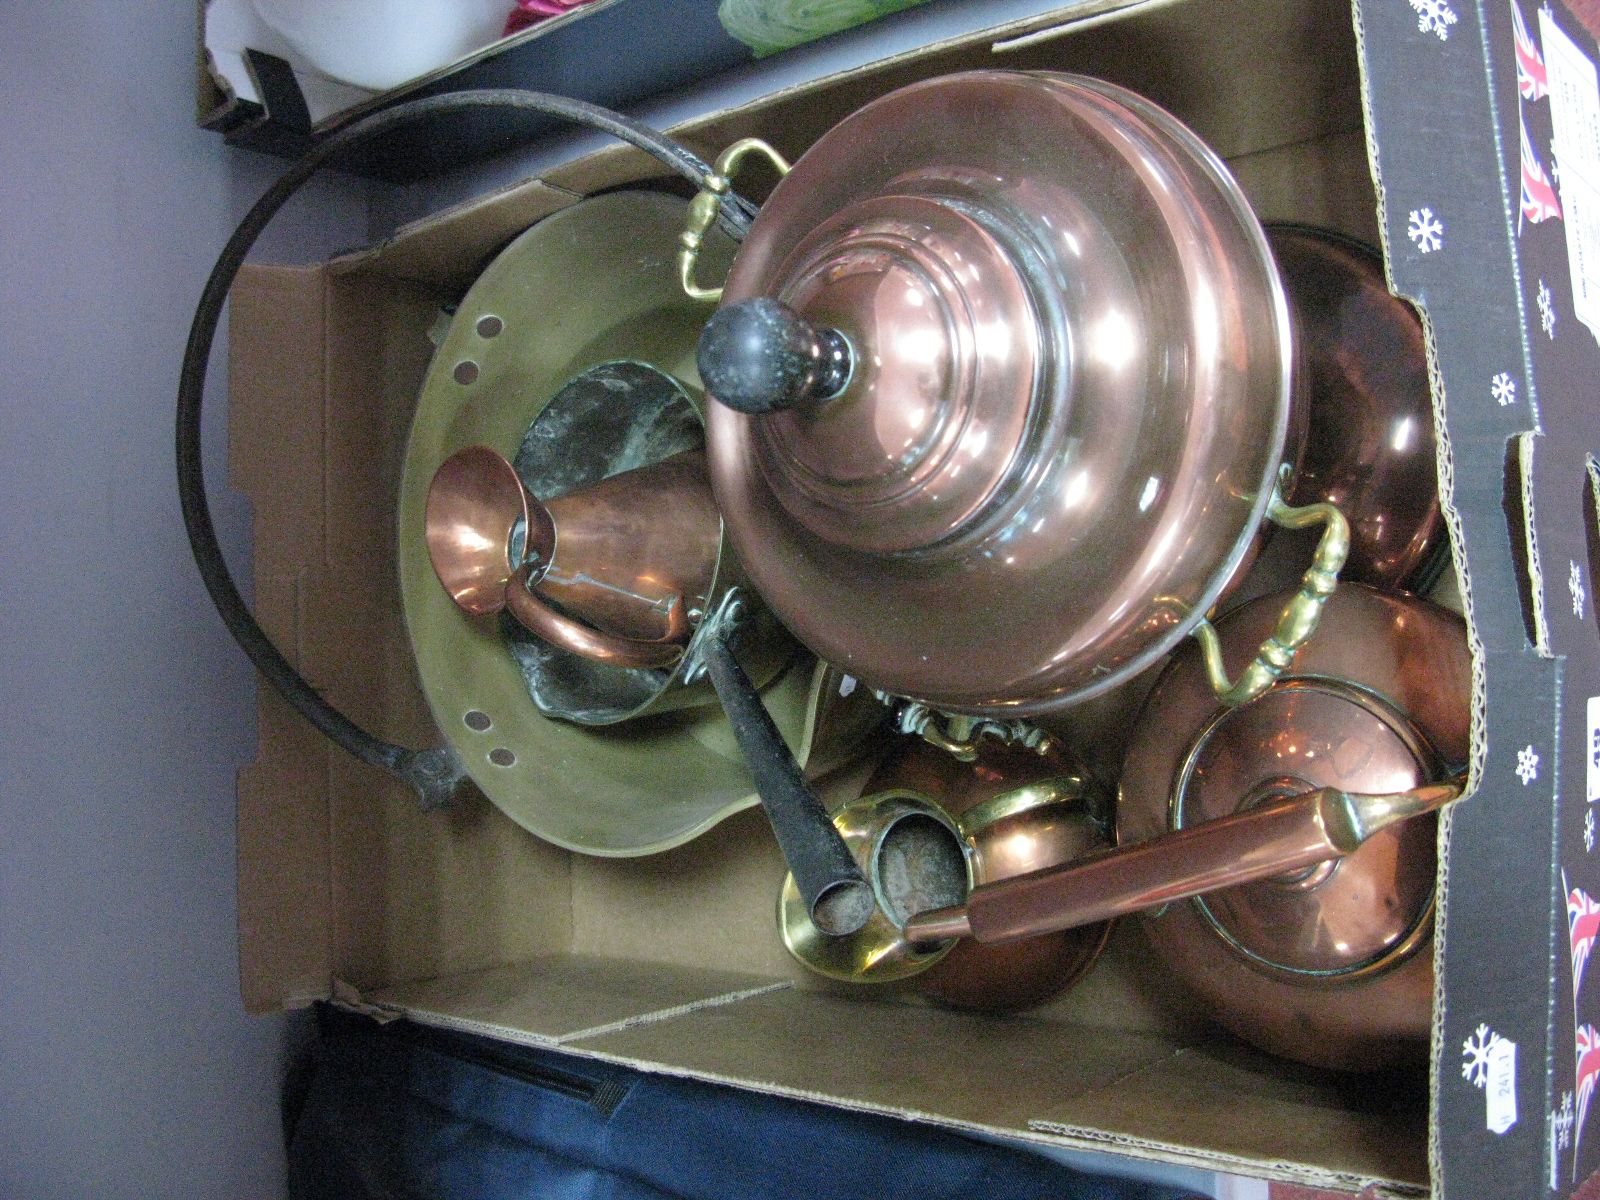 XIX Century Brass Jam Pan, XIX Century brass saucepan, XIX Century copper kettle with an acorn